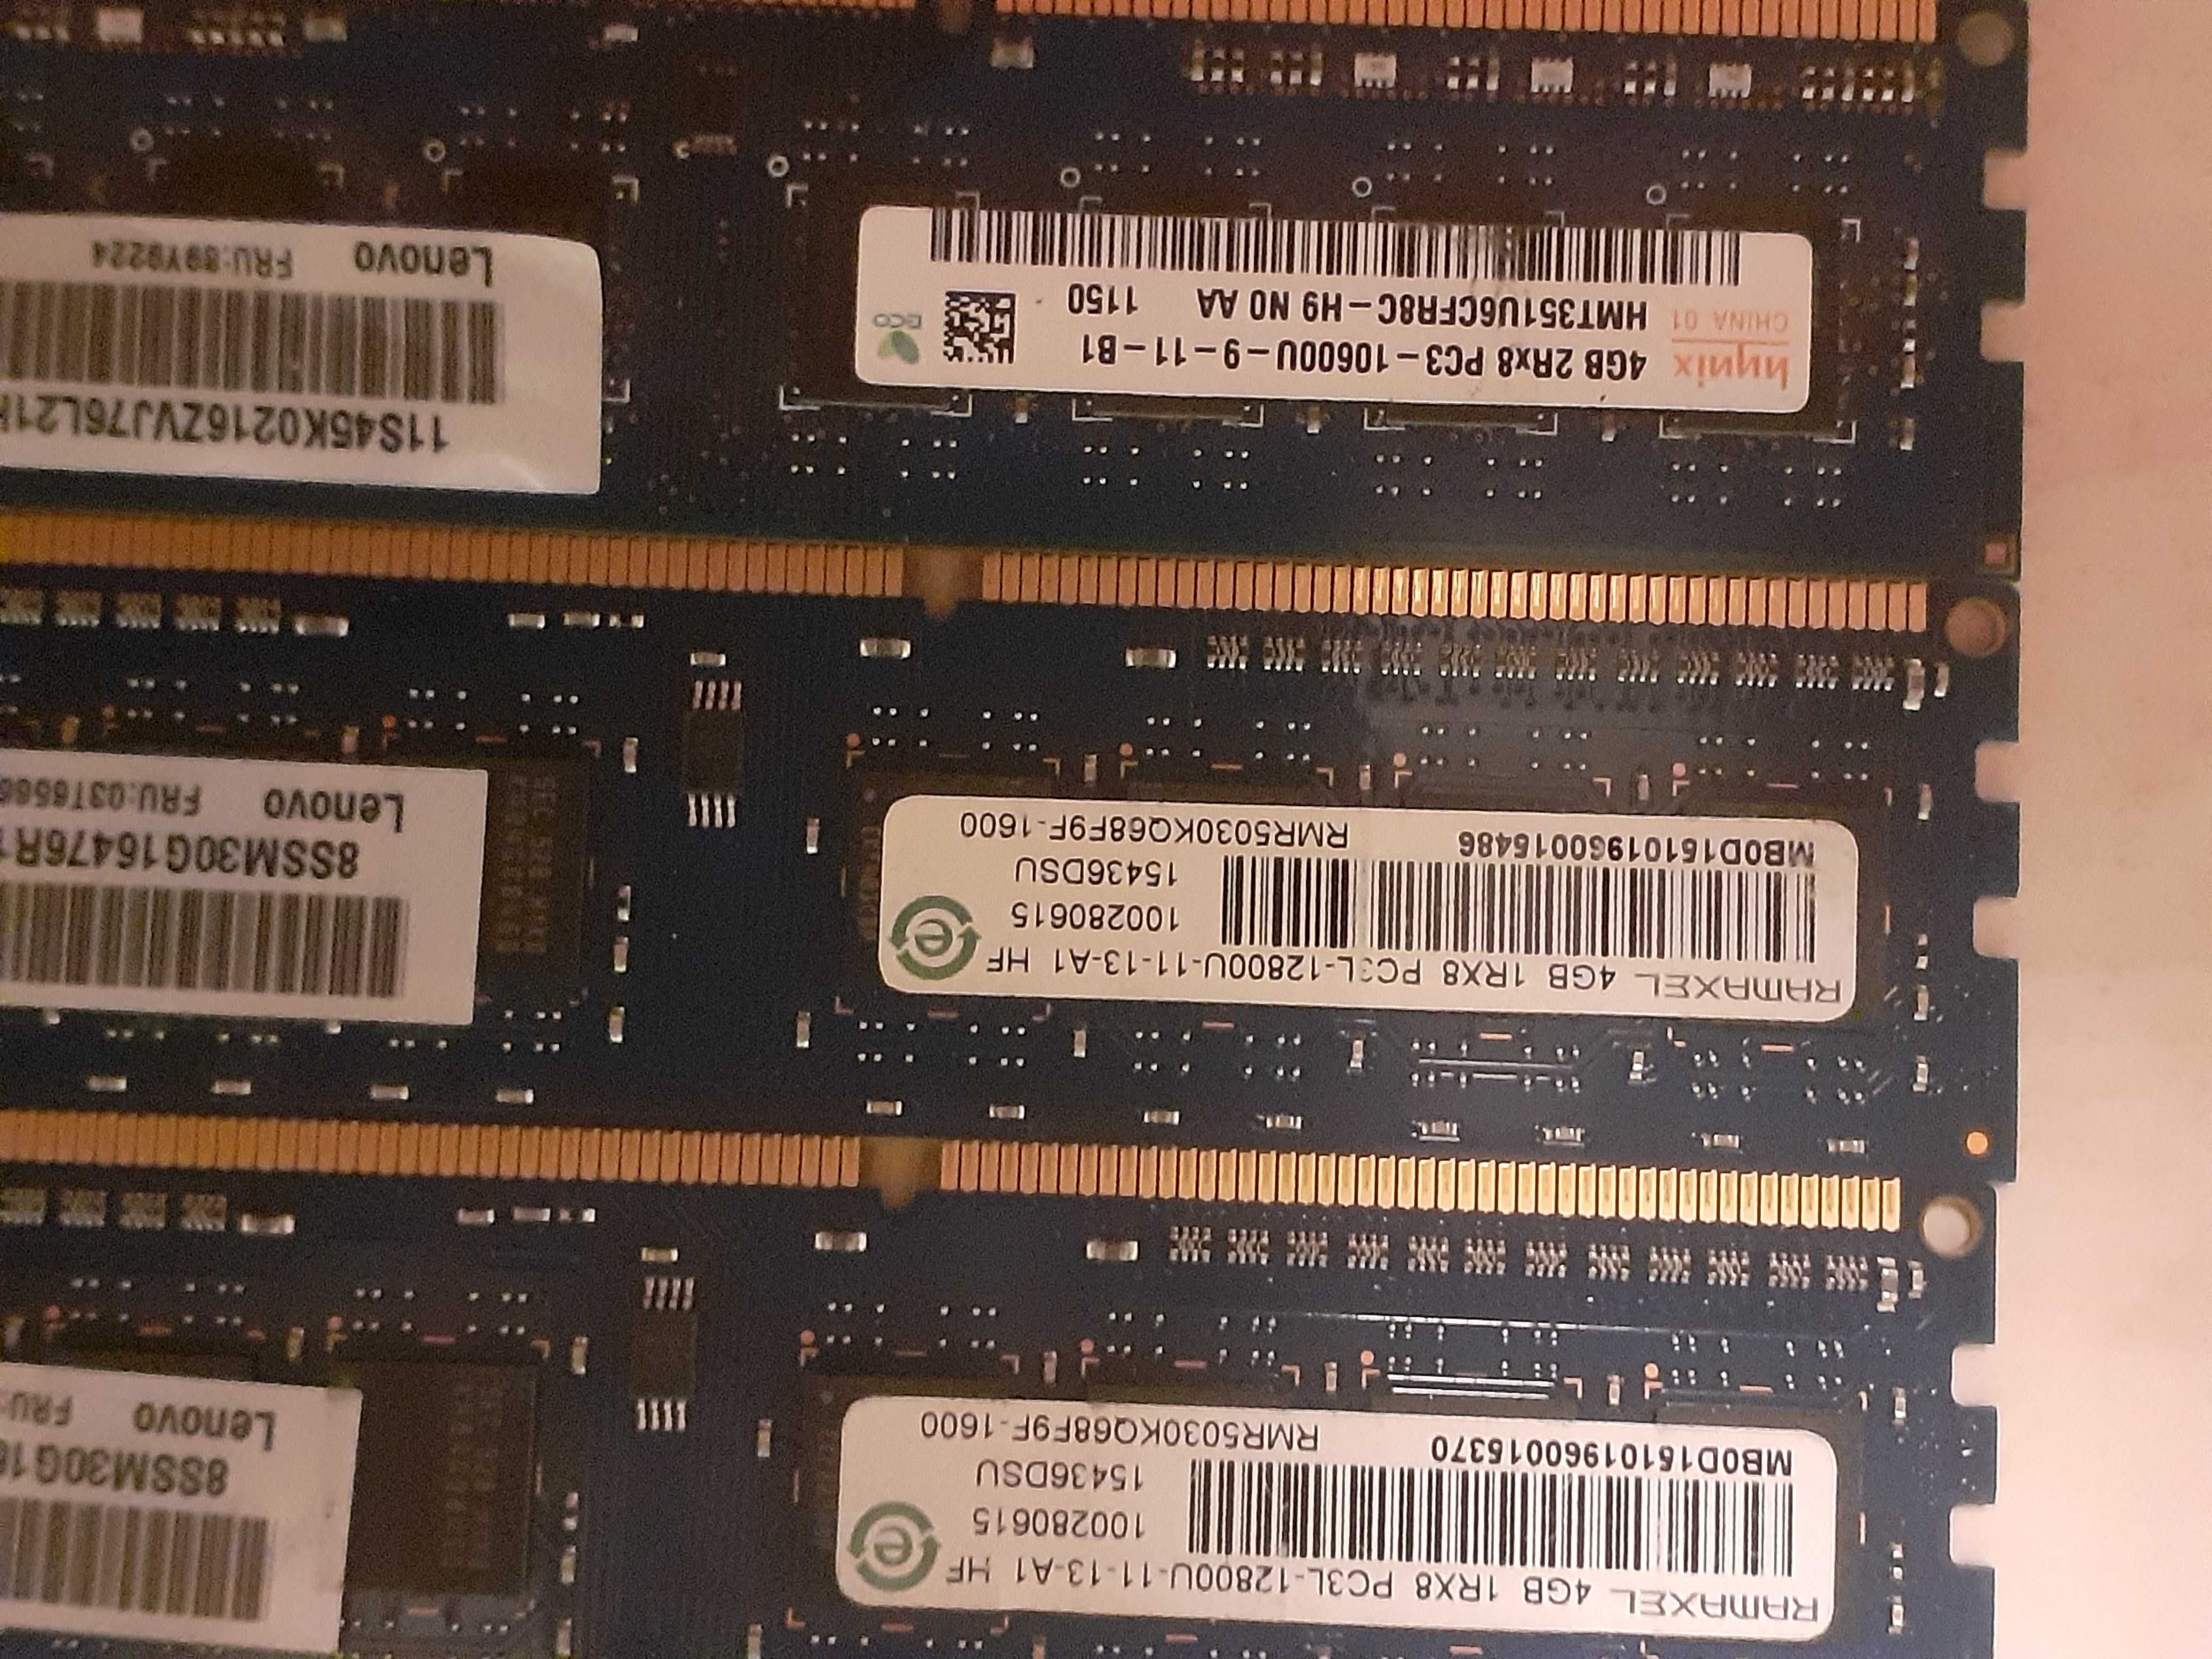 Vand memorii RAM DDR3 si DDR4 pc si laptop ( detalii in descriere )